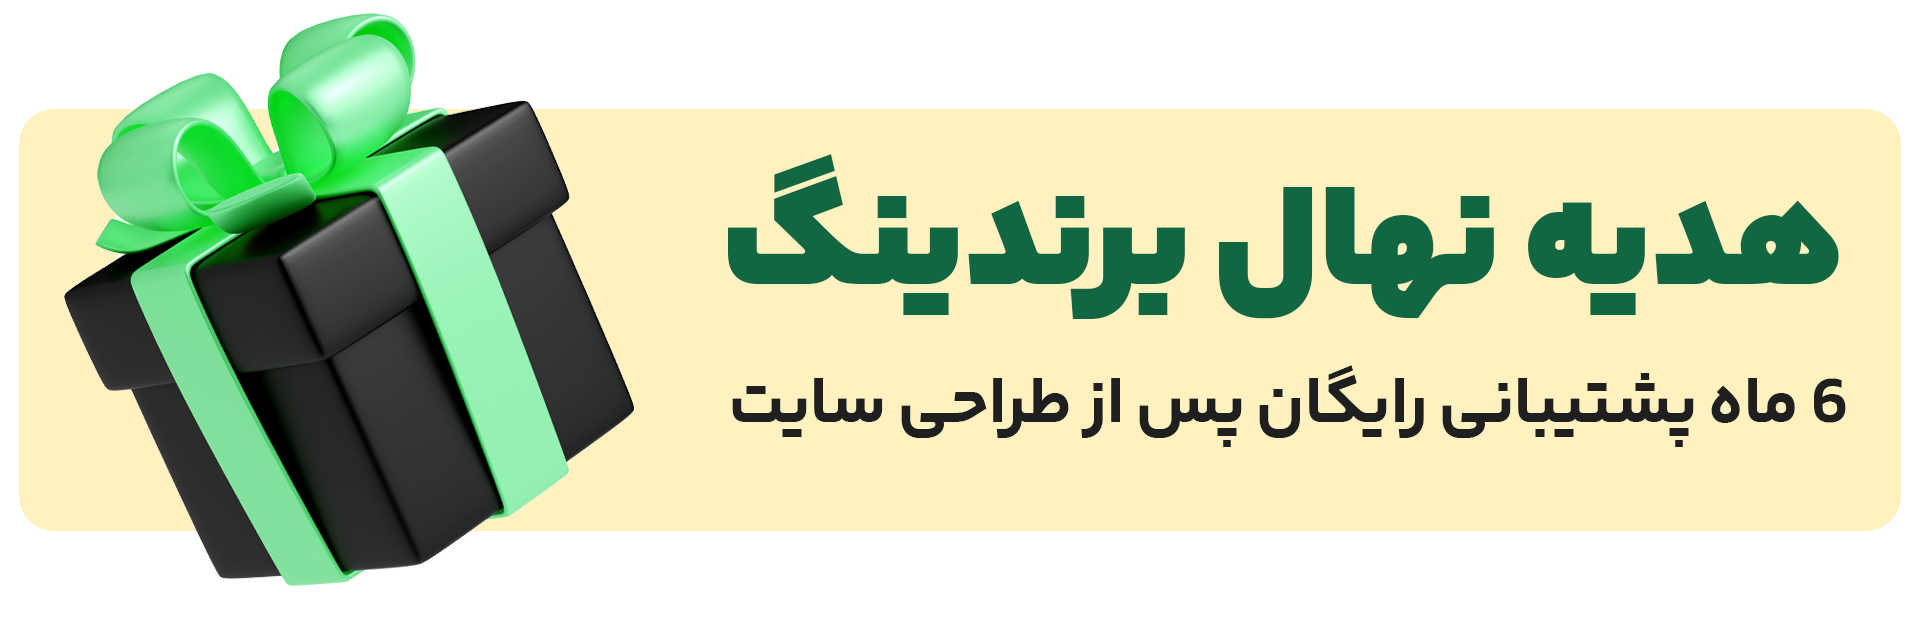 پشتیبانی رایگان پس از طراحی سایت در تهران